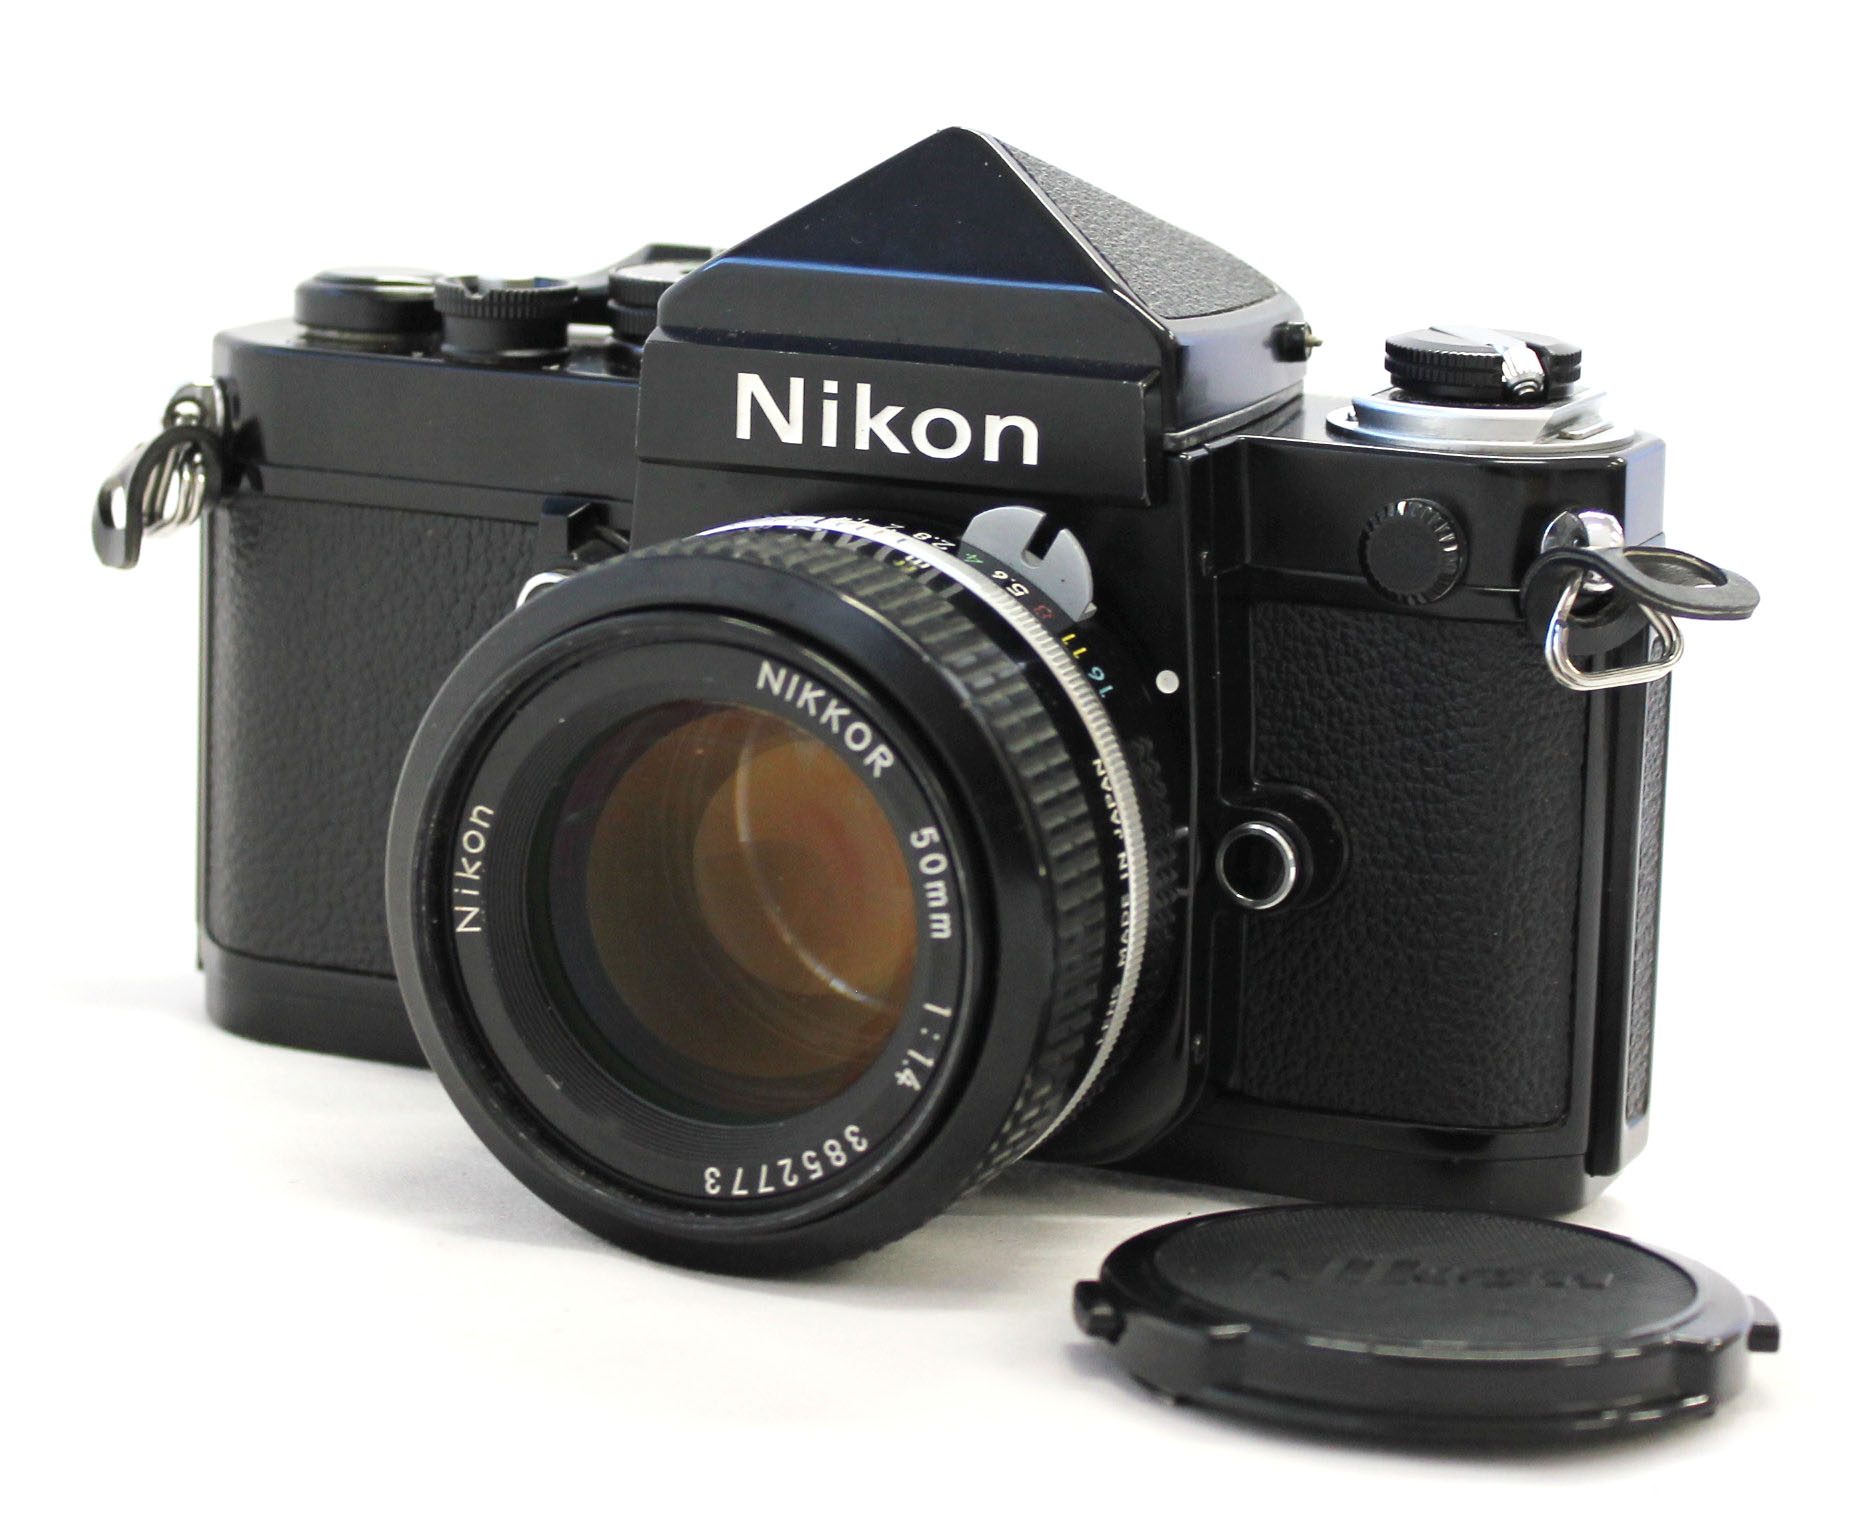 Nikon F2 Eye Level 35mm SLR Film Camera Black DE-1 View Finder with Nikkor  50mm F/1.4 Lens from Japan (C1981) | Big Fish J-Camera (Big Fish J-Shop)